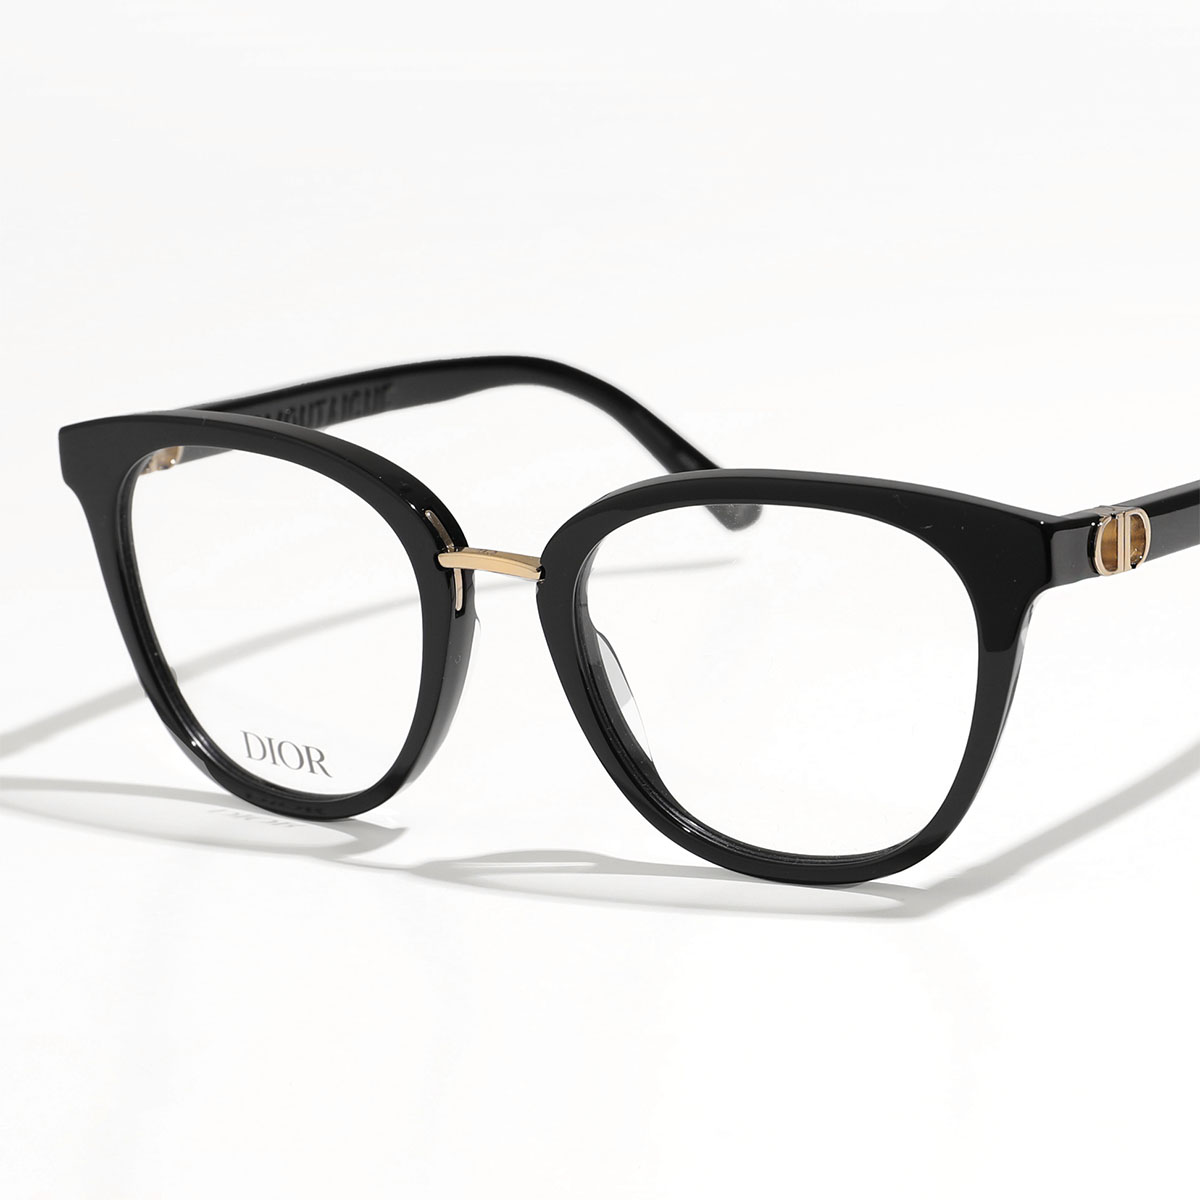 Dior ディオール メガネ 30MONTAIGNE MINIO モンテーニュ ミニ CD50029I レディース ウェリントン型 めがね 伊達メガネ  ダテ 眼鏡 アイウェア カラー2色